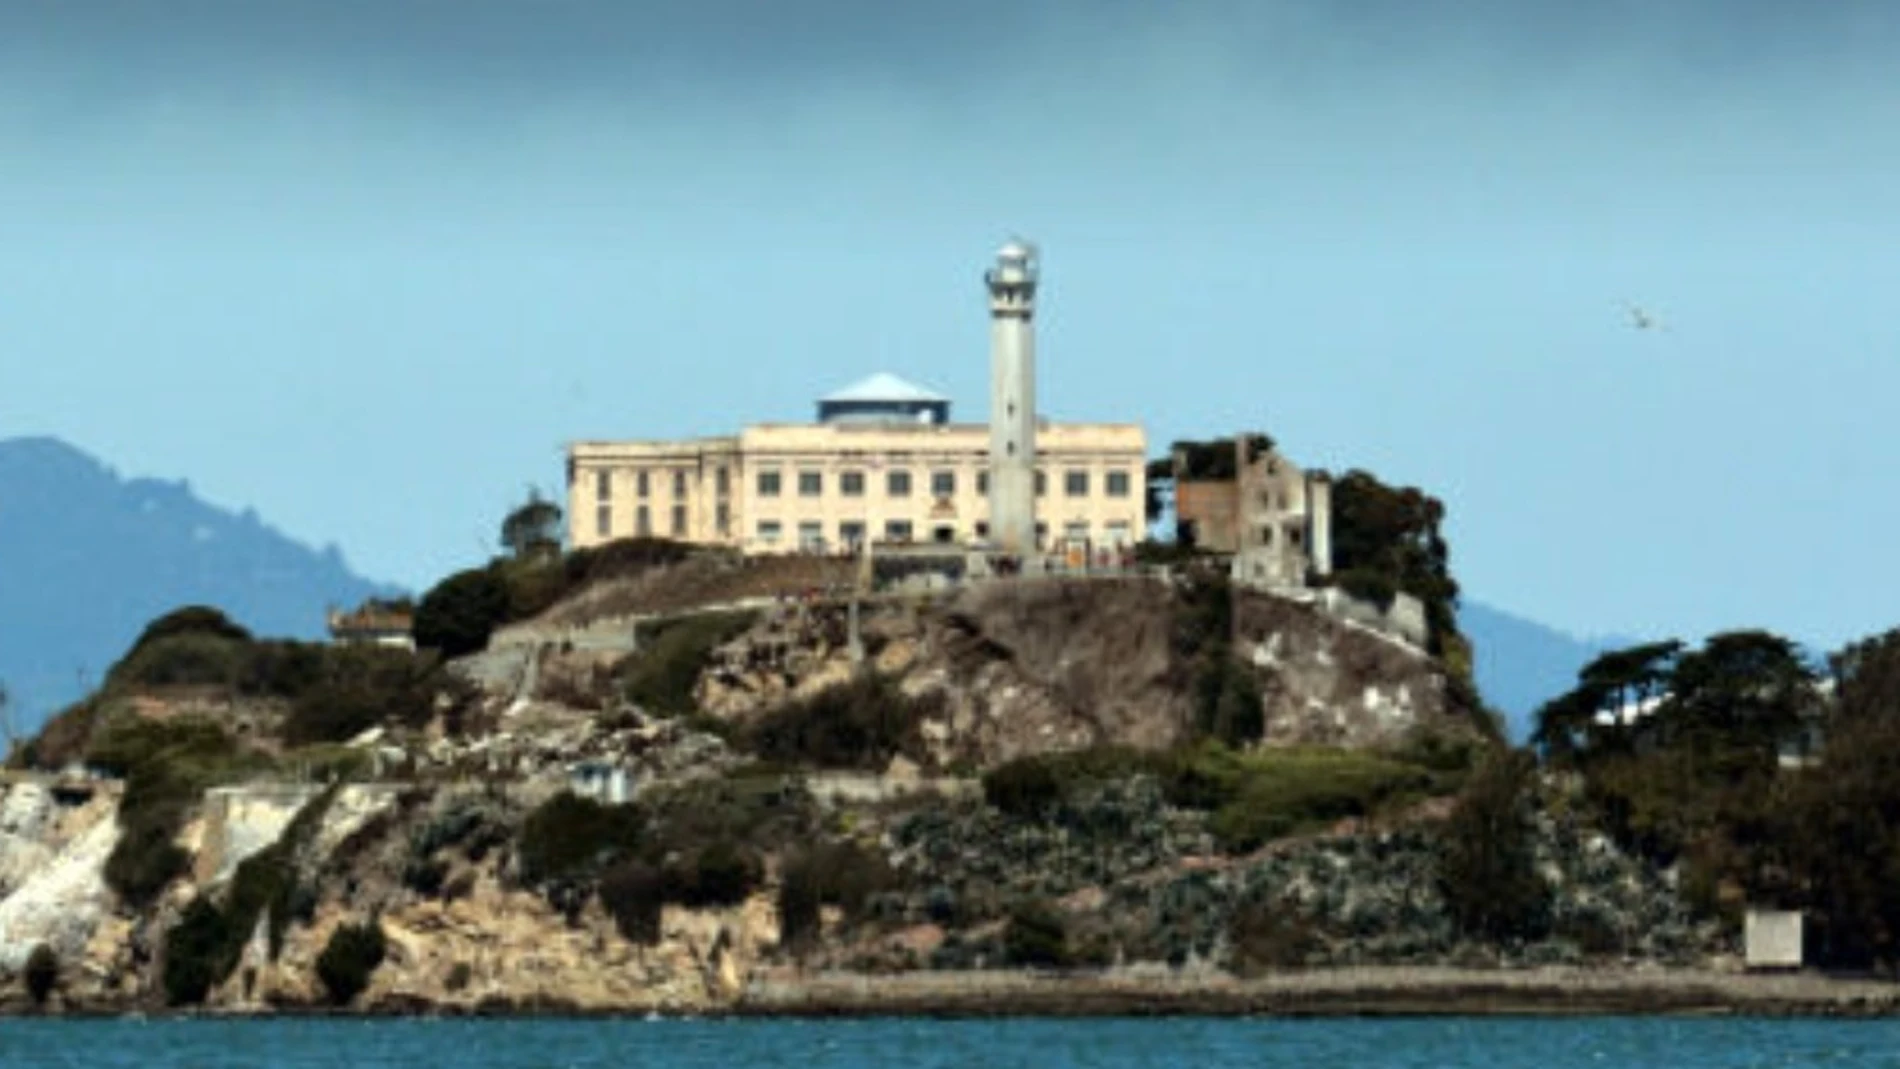 Imagen del exterior de la prisión de Alcatraz